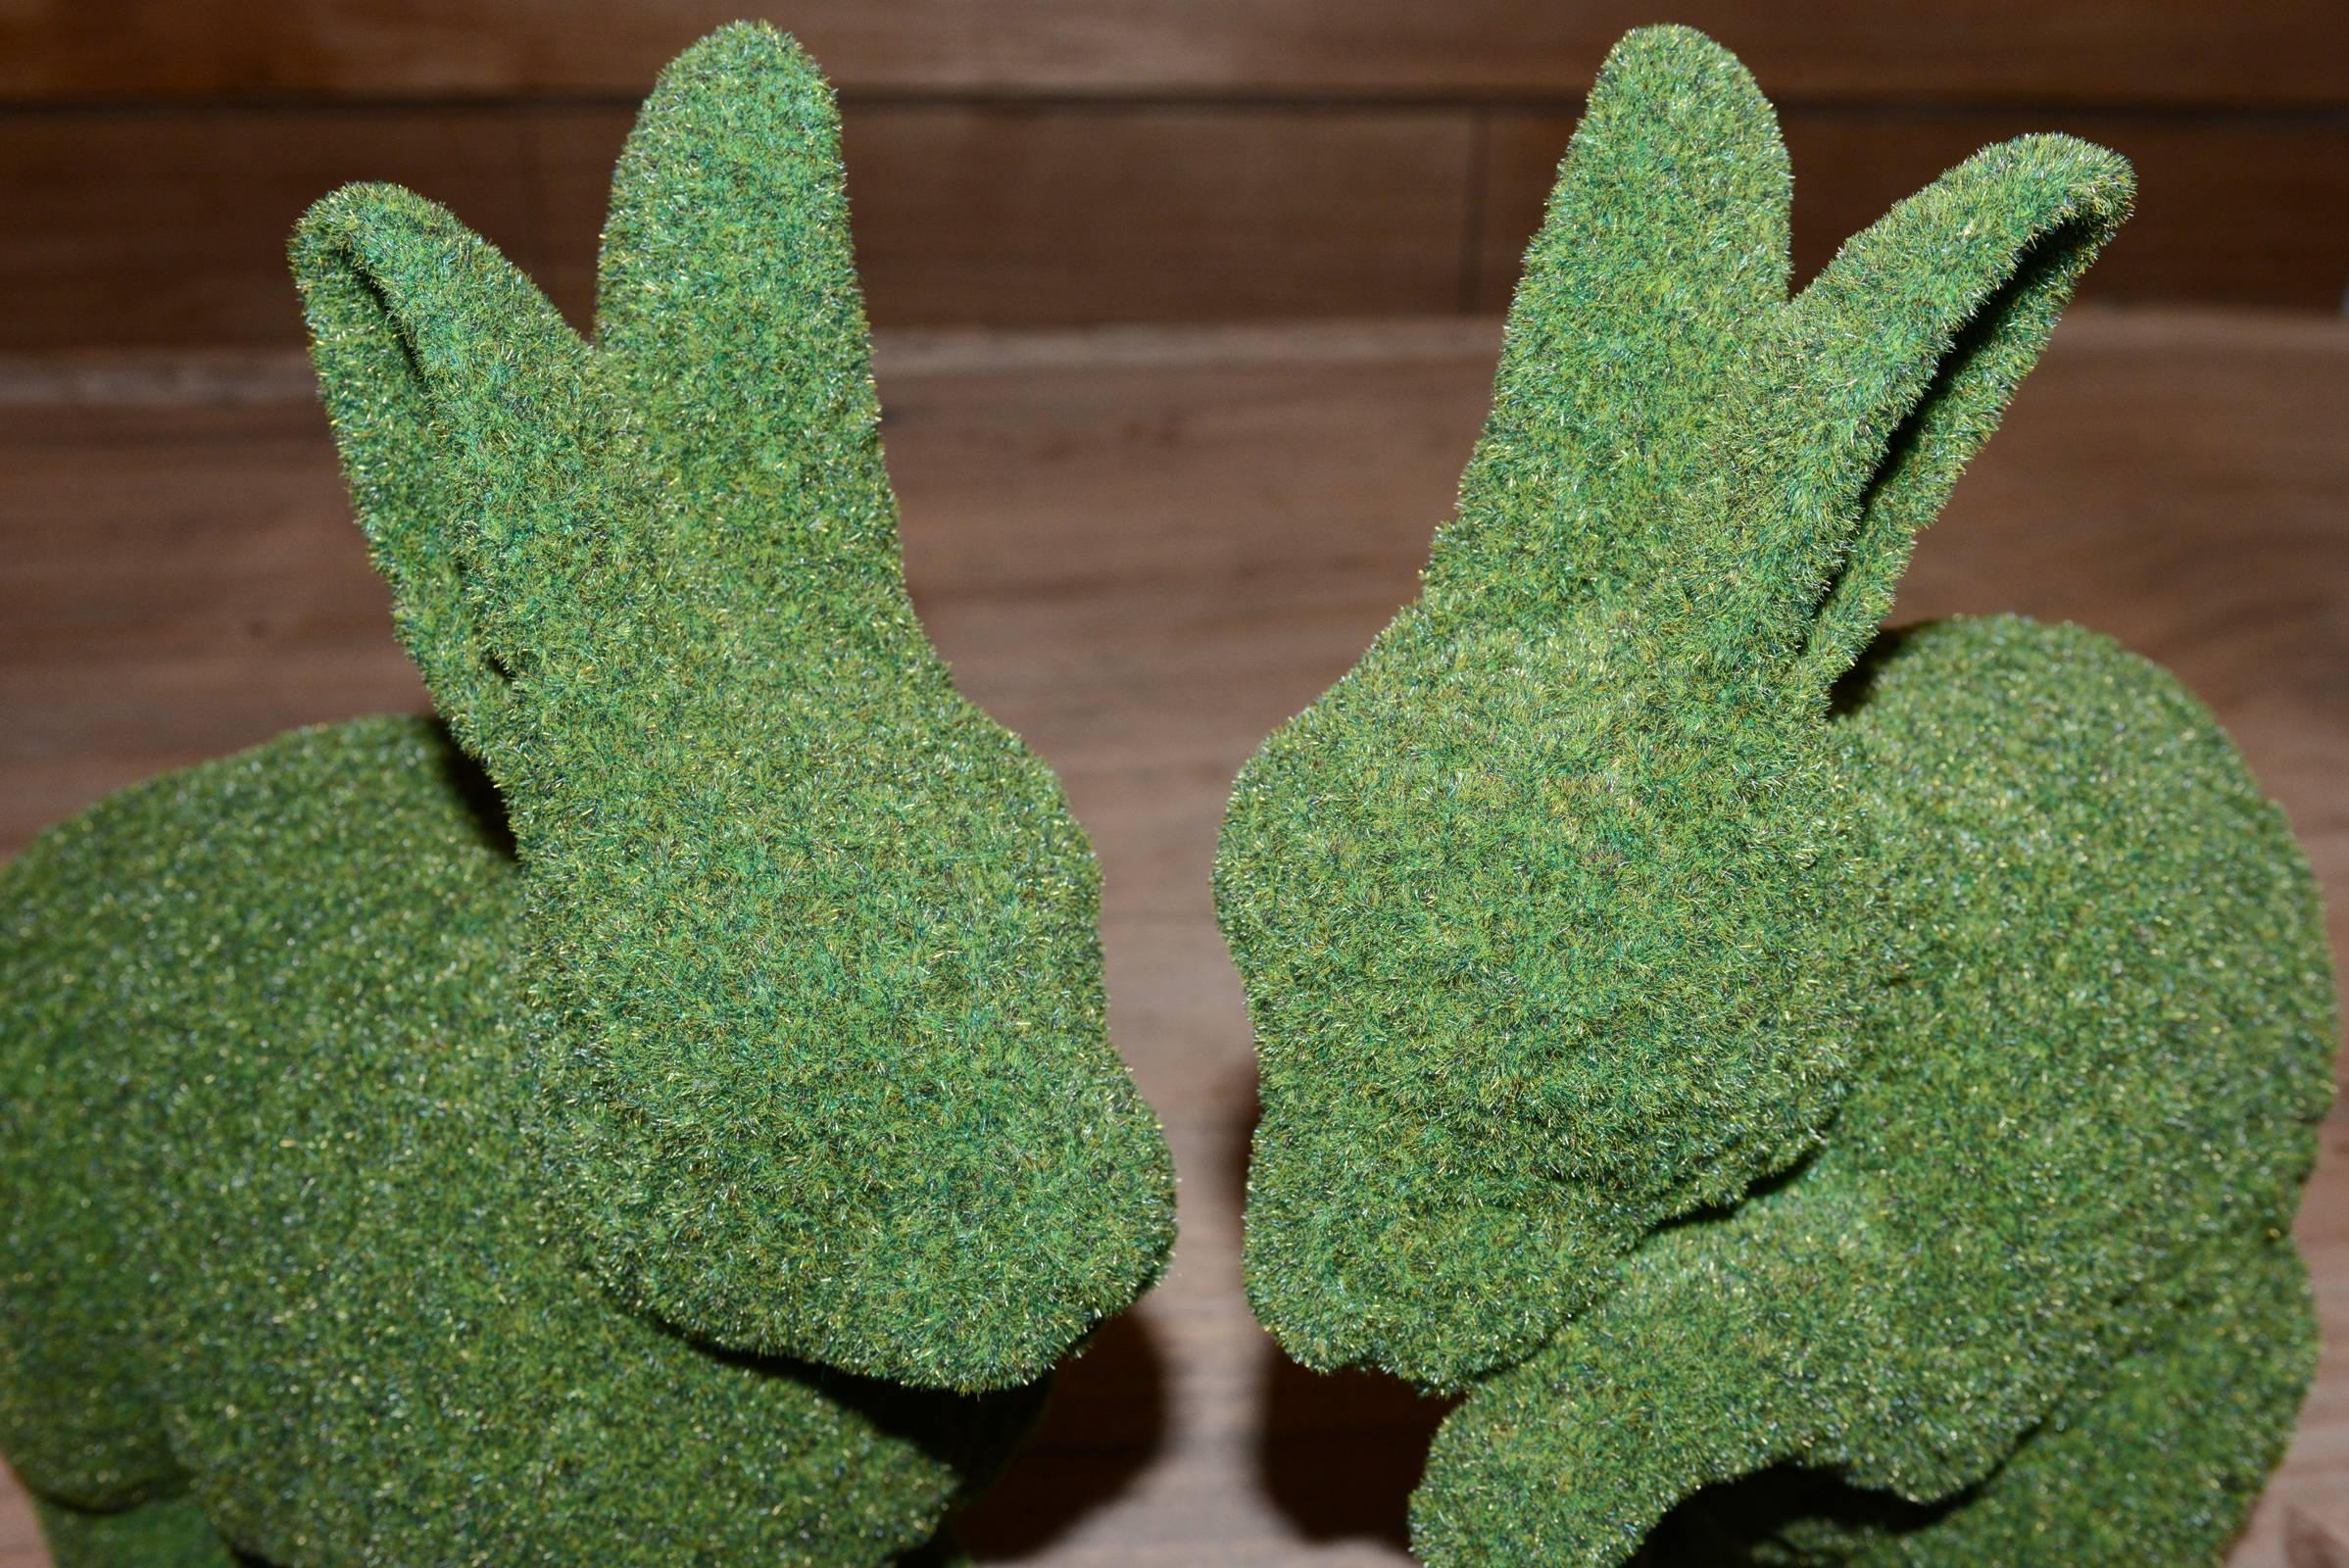 Garden Rabbit Sculpture in Synthetic Turf 3